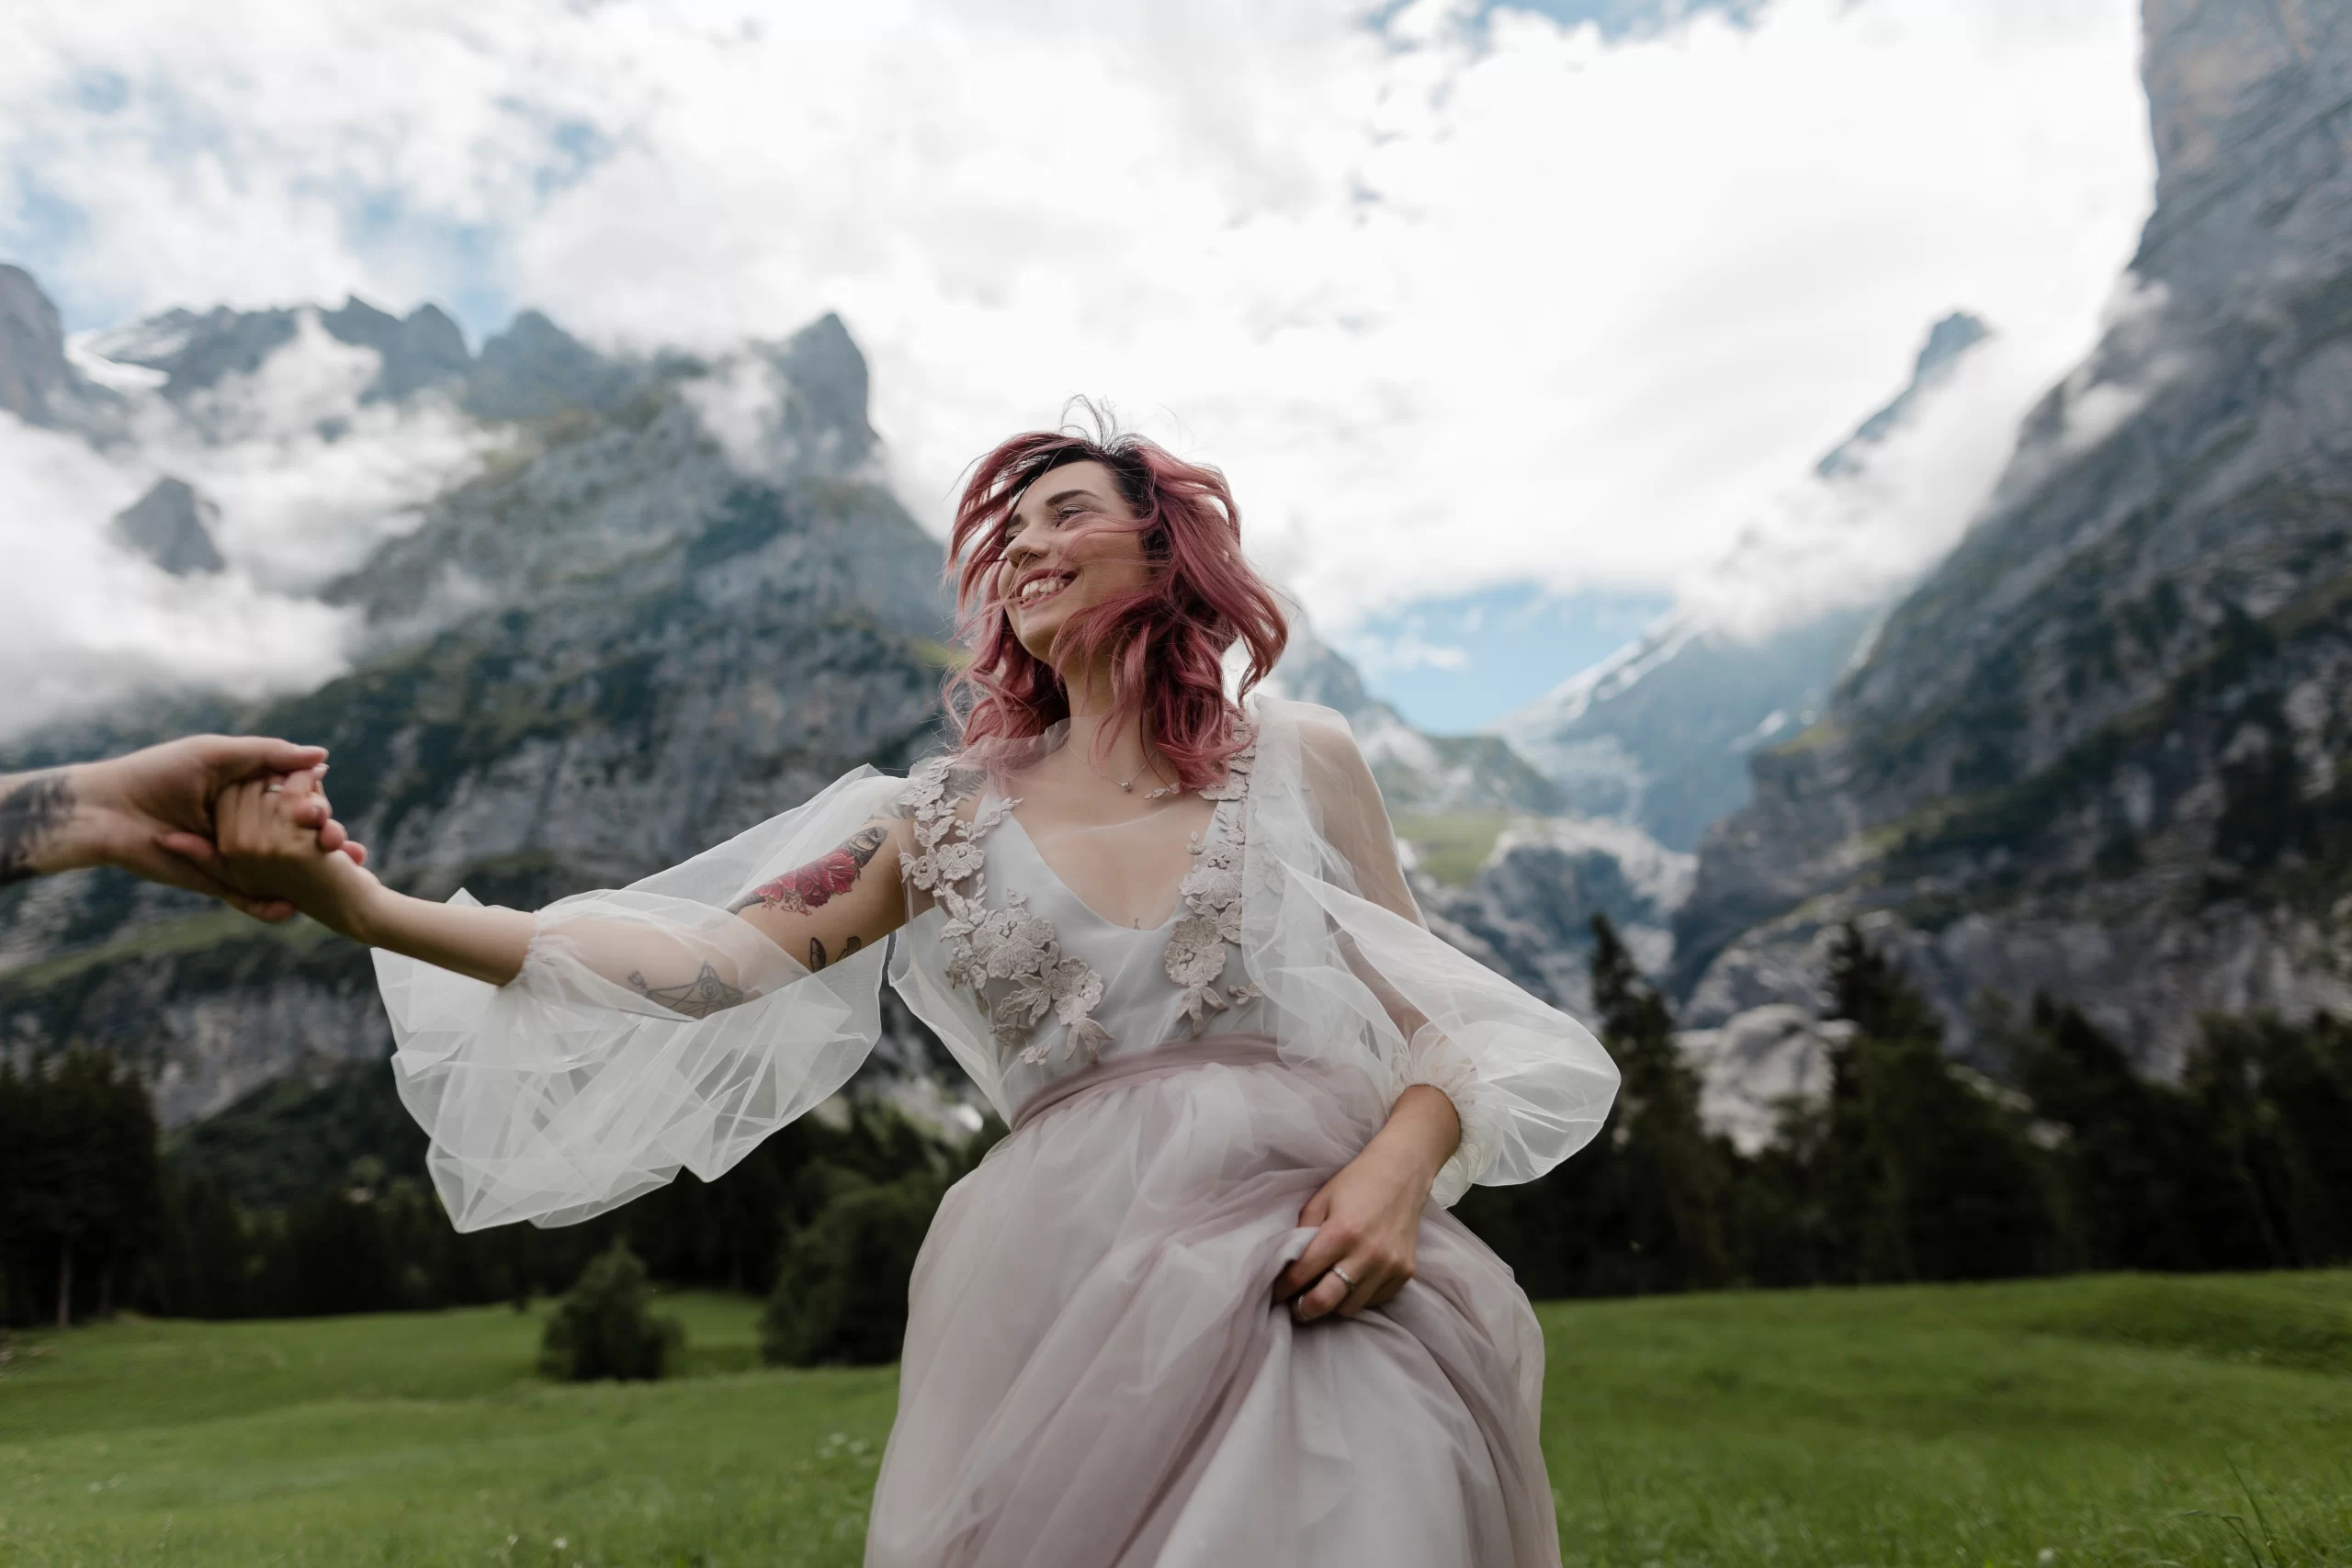 Mulher ruiva feliz correndo com um vestido de noiva. Ela está na grama ao ar livre com montanhas e arvores aparecendo ao fundo da imagem.